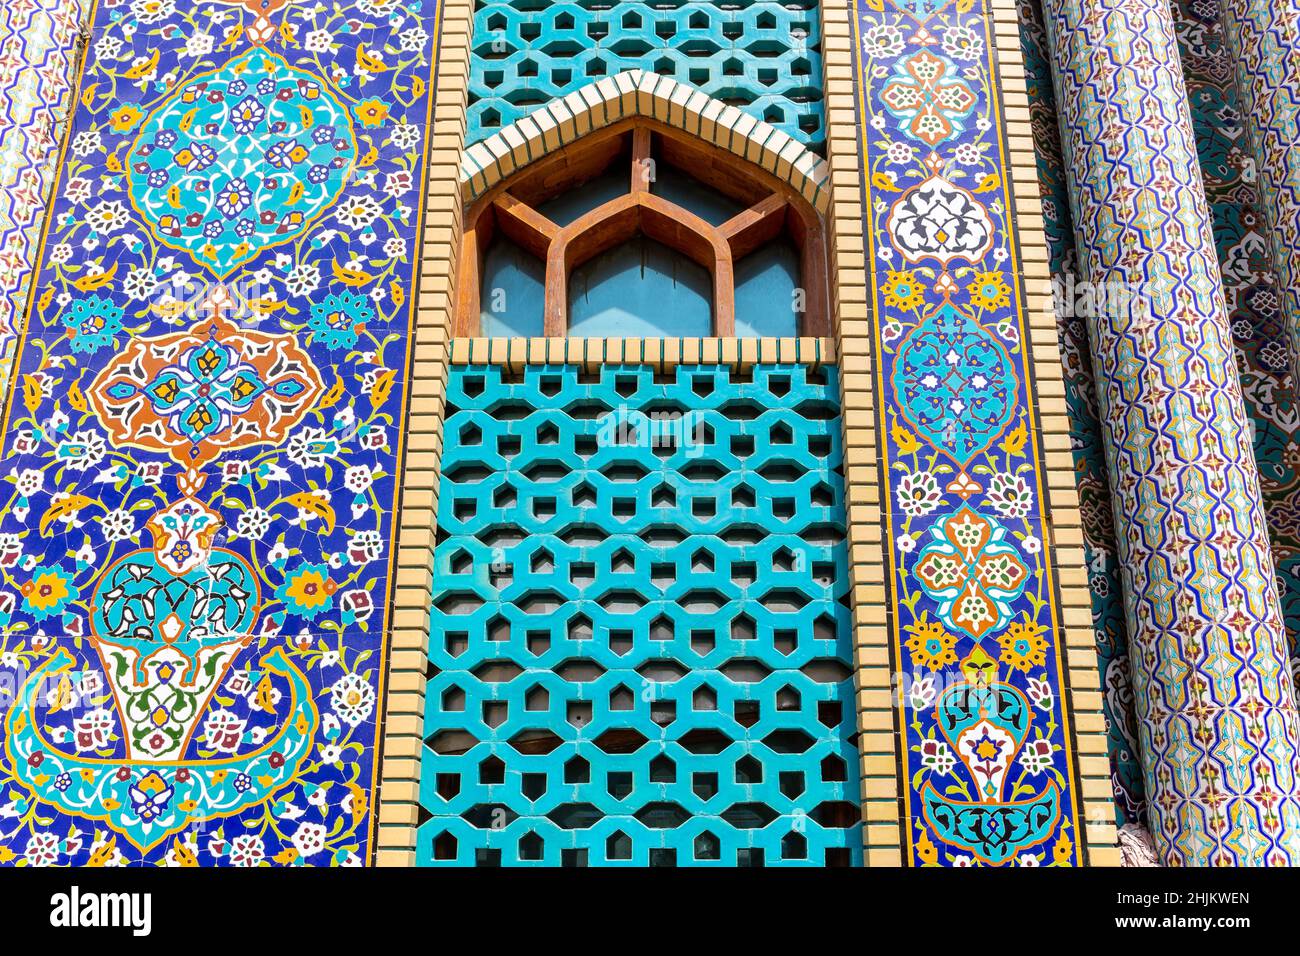 Fassade der Ali Ibn Abi Talib Moschee (iranische Moschee Hosainia), farbenfrohe schiitische iranische Moschee in Bur Dubai, Deira mit persischen Fayence-Fliesen. Stockfoto